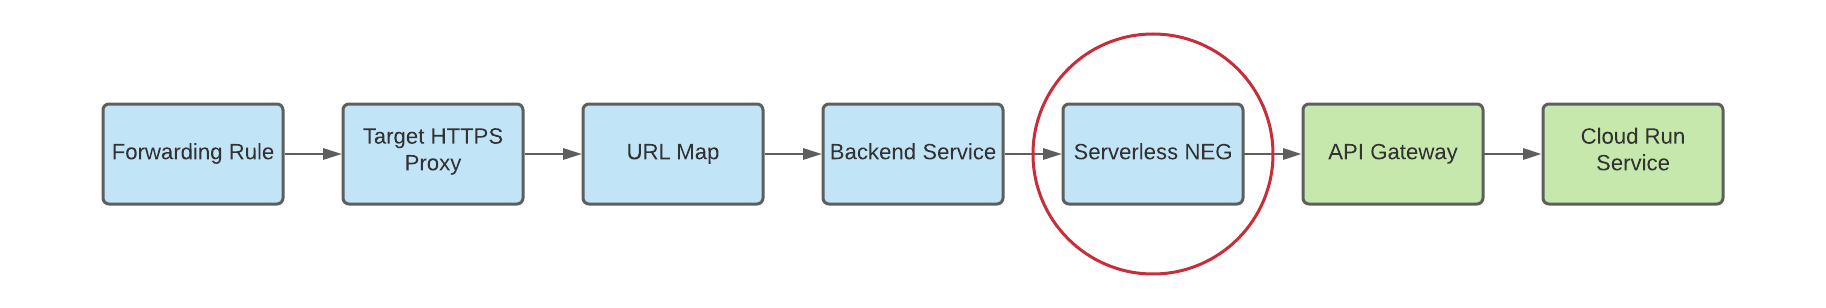 diagrama de neg sem servidor como back-end para gateways multirregionais